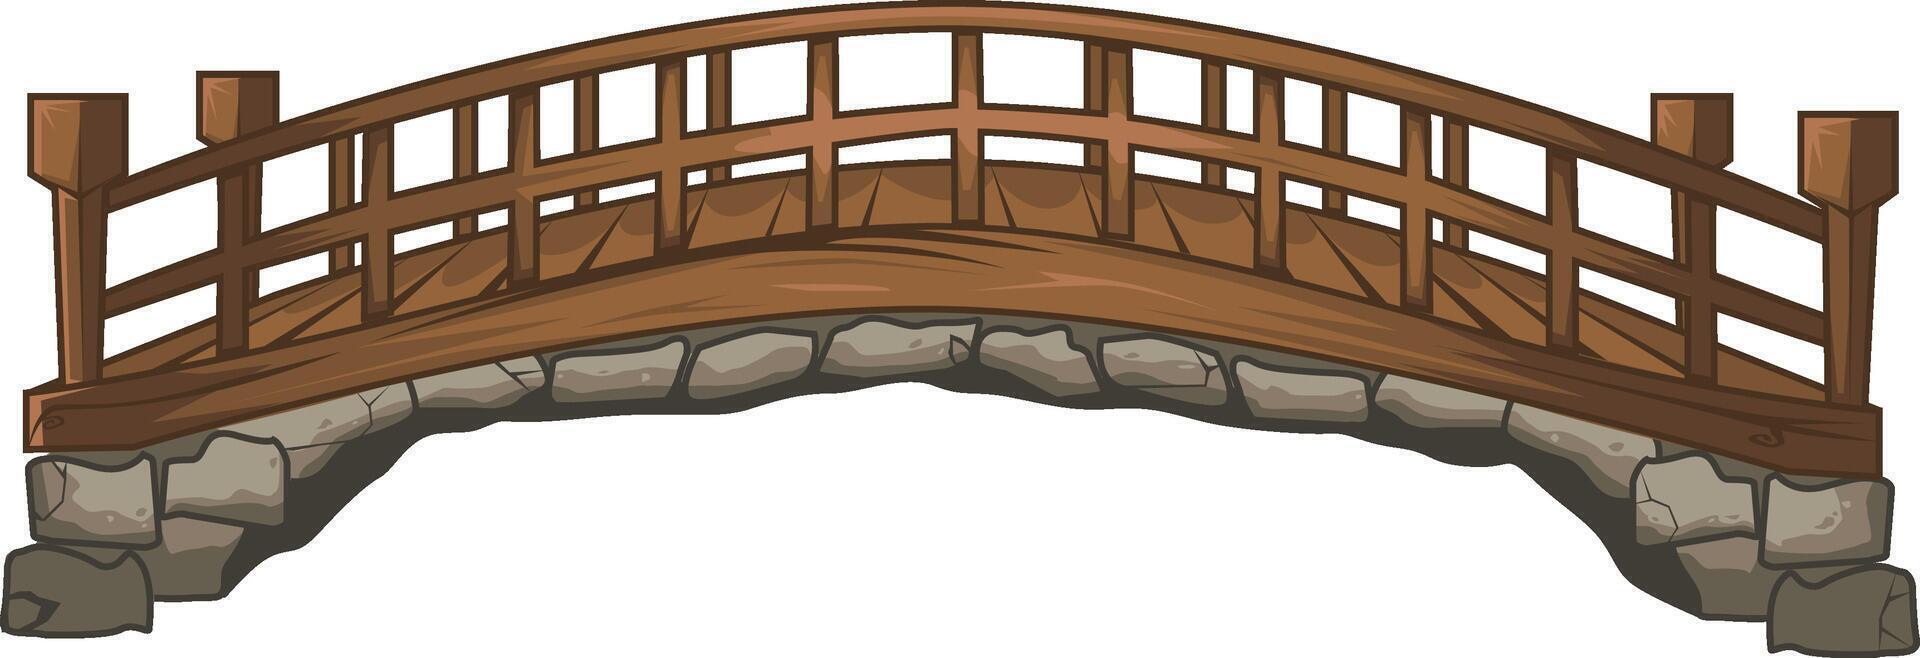 de madeira medieval ponte vetor